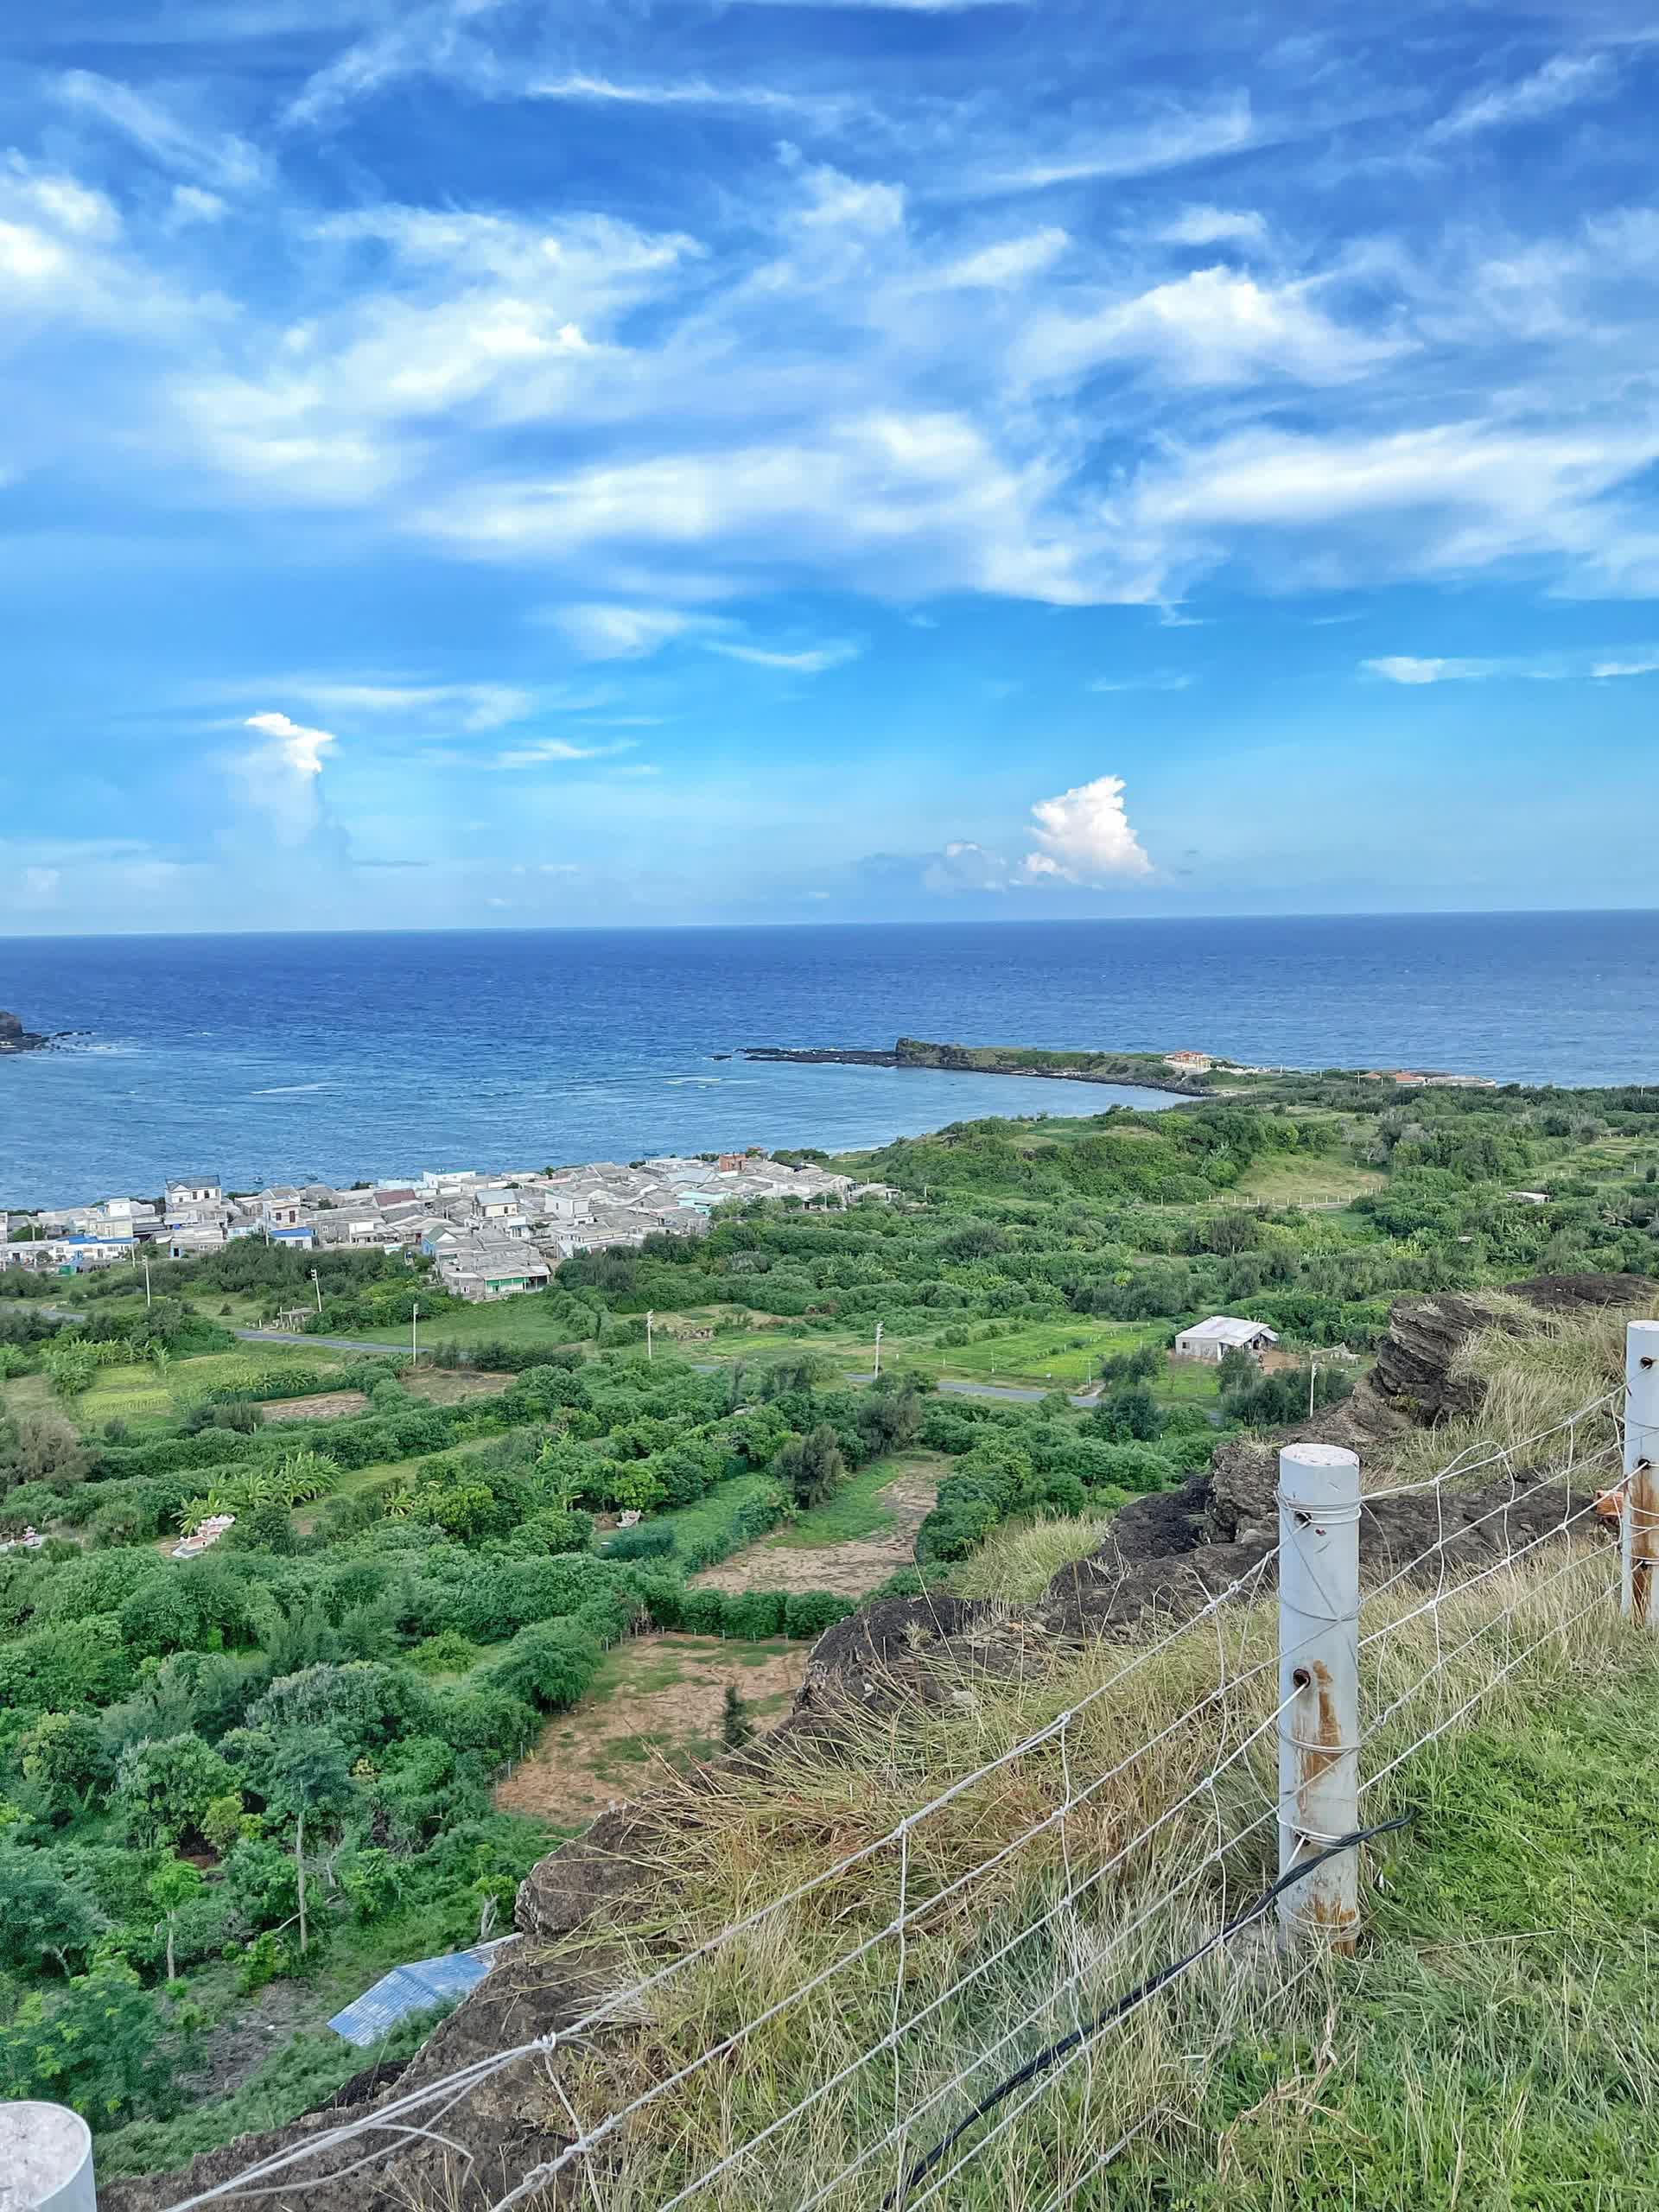 Đảo Phú Quý bắt đầu vào mùa biển xanh nắng vàng, chỉ cần đứng vào là có ảnh đẹp- Ảnh 3.